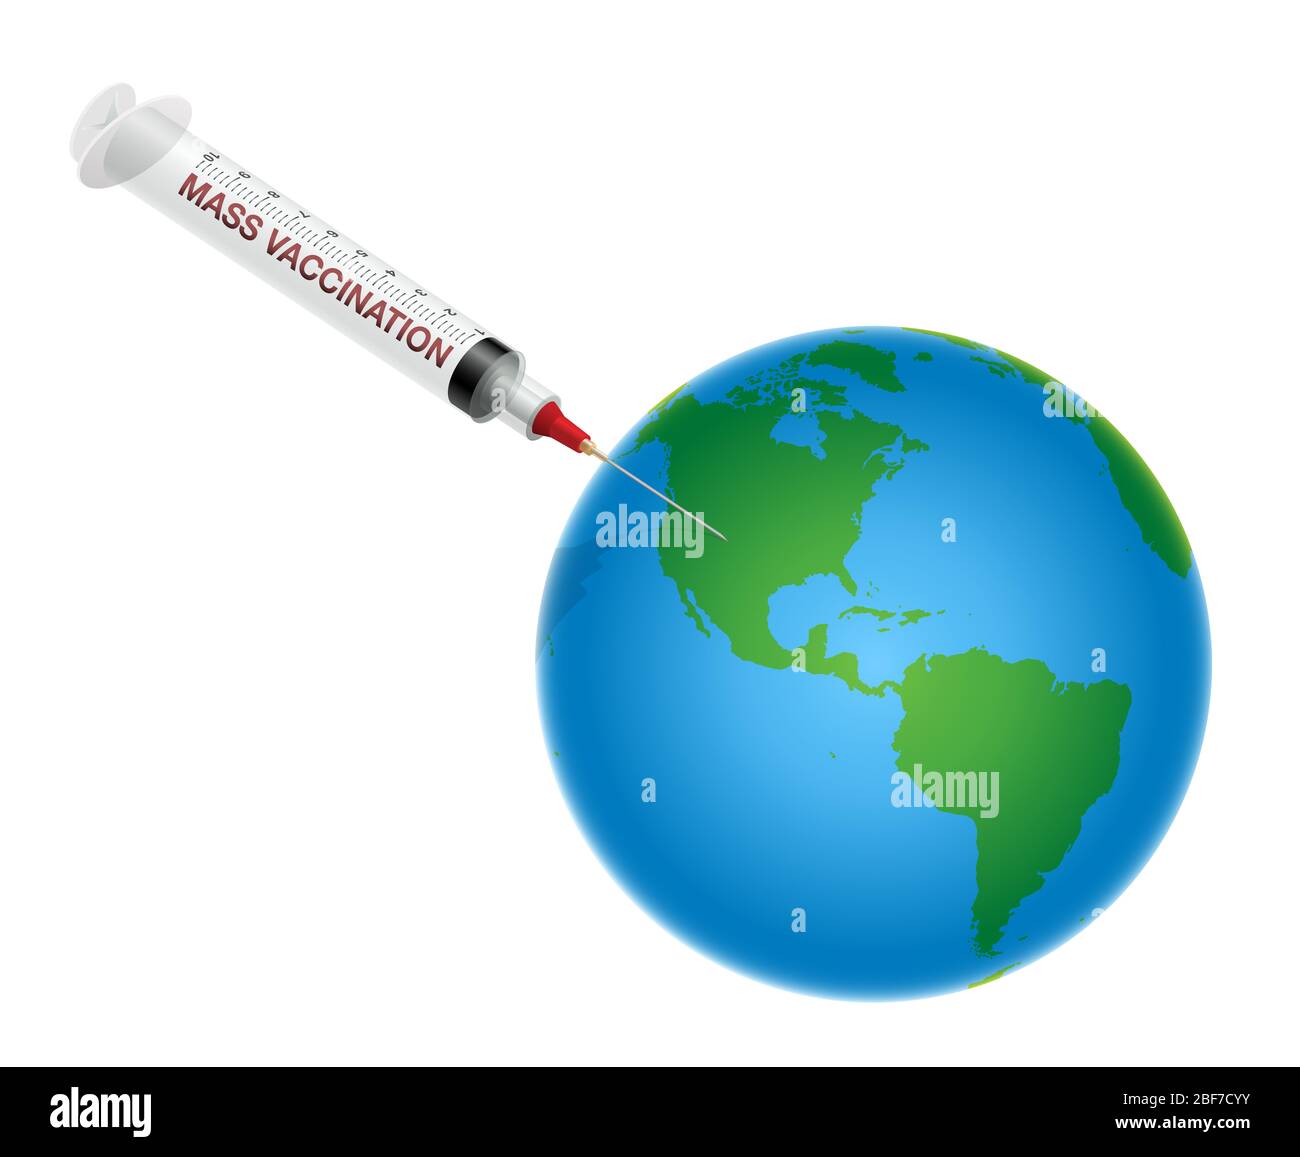 La seringue vaccine la planète Terre. Symbole de la vaccination de masse et campagne mondiale de vaccination contre le coronavirus dans l'industrie pharmaceutique. Banque D'Images